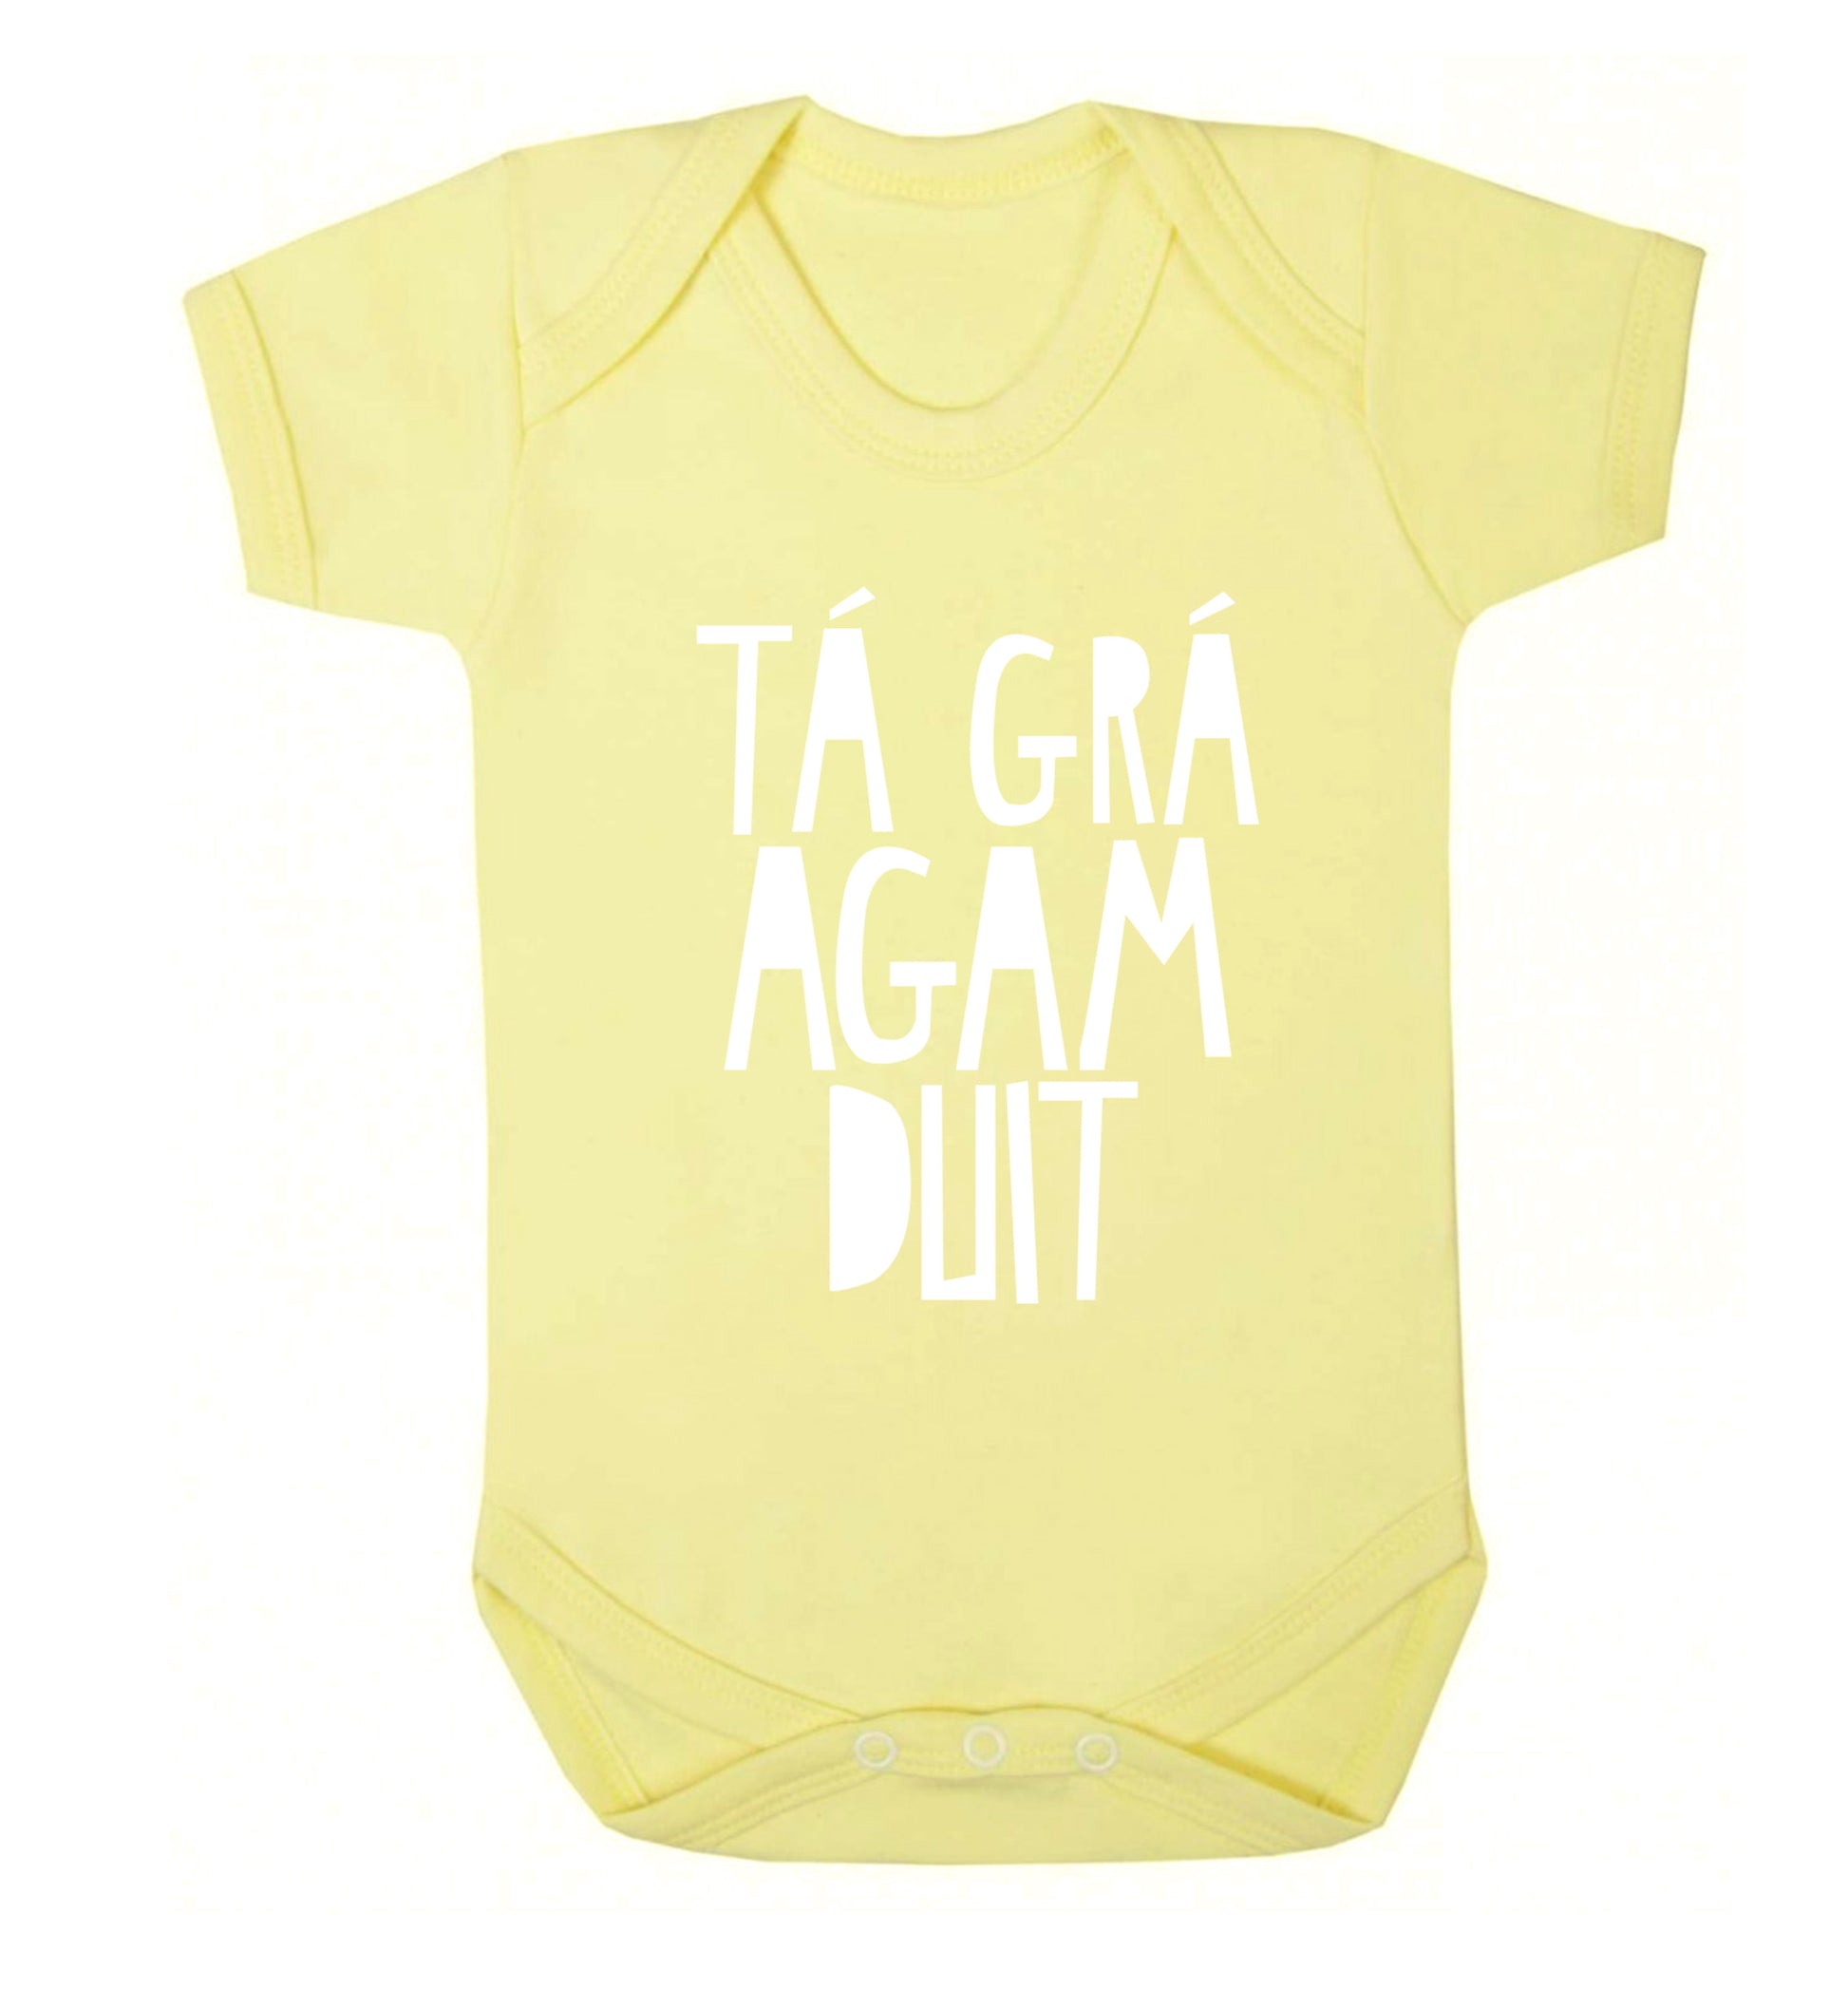 T‚Ä° gr‚Ä° agam duit - I love you Baby Vest pale yellow 18-24 months